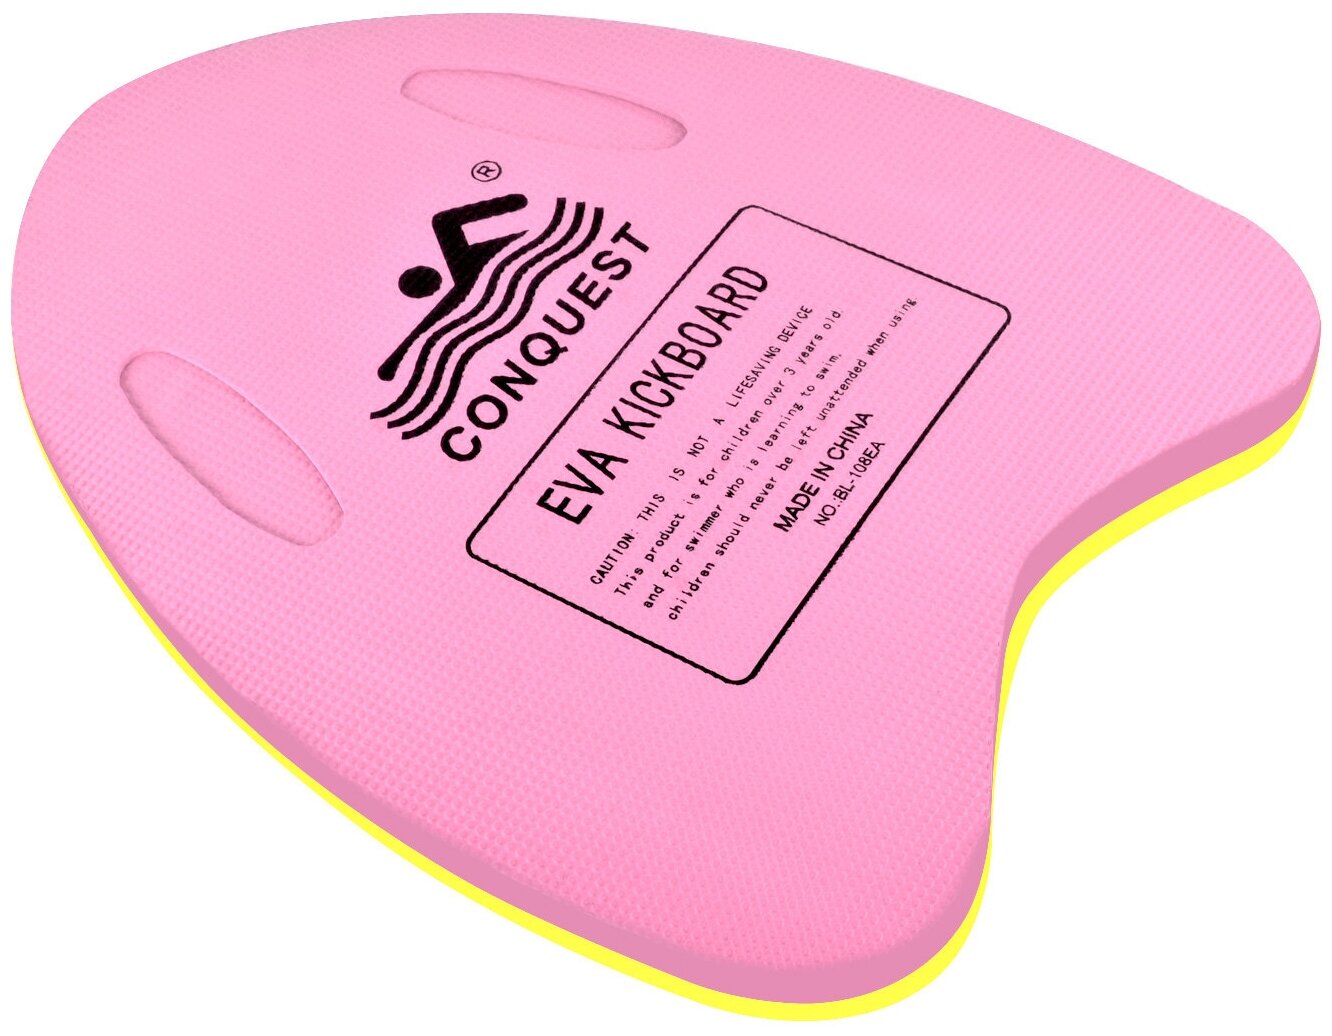 Доска для плавания треугольная CLIFF цвет: розовый (30*40*3см)